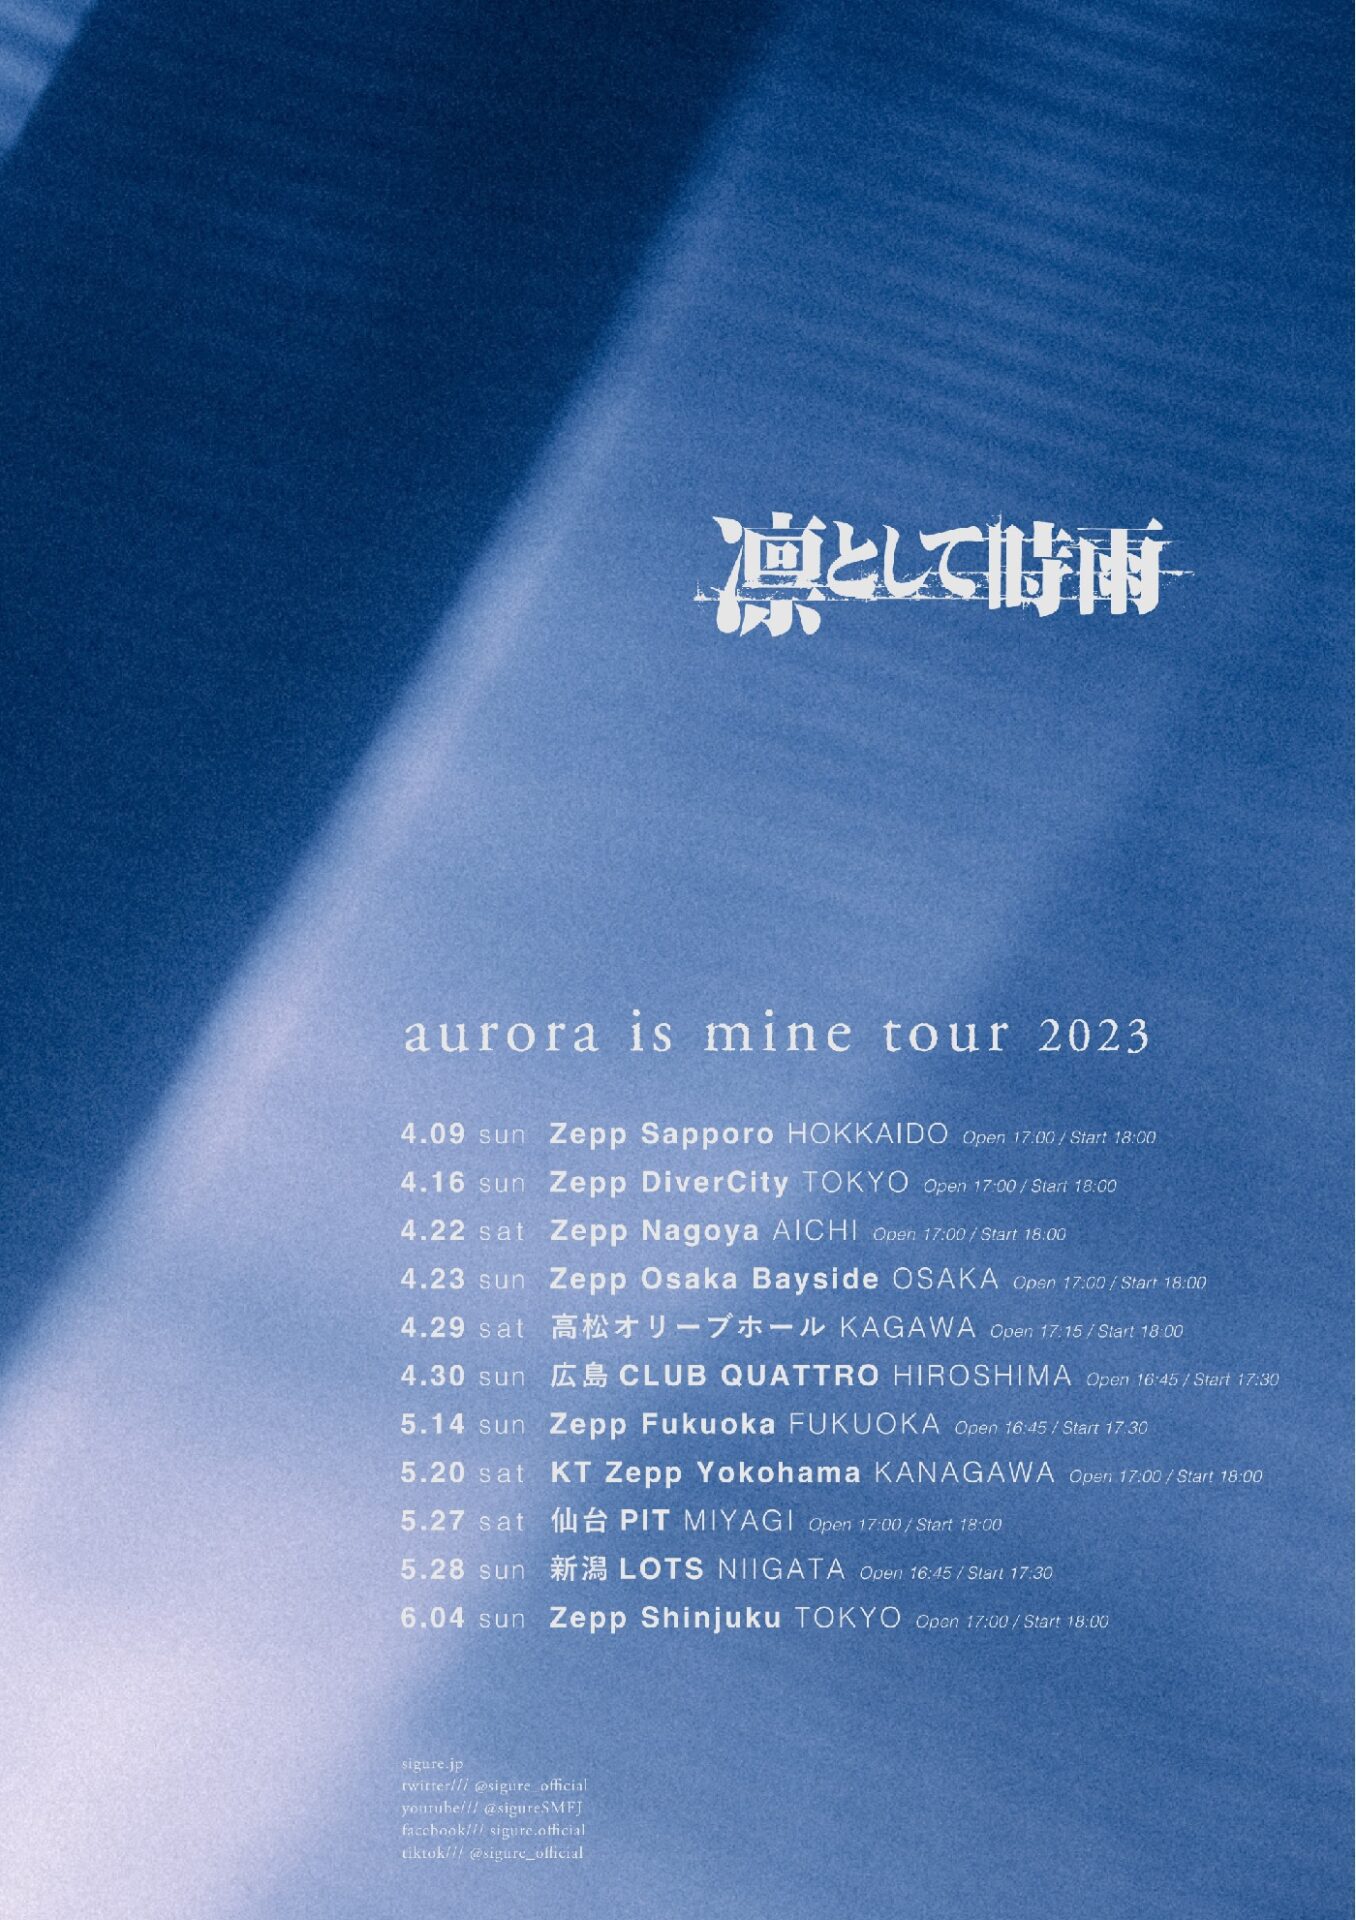 凛として時雨 「aurora is mine tour 2023」